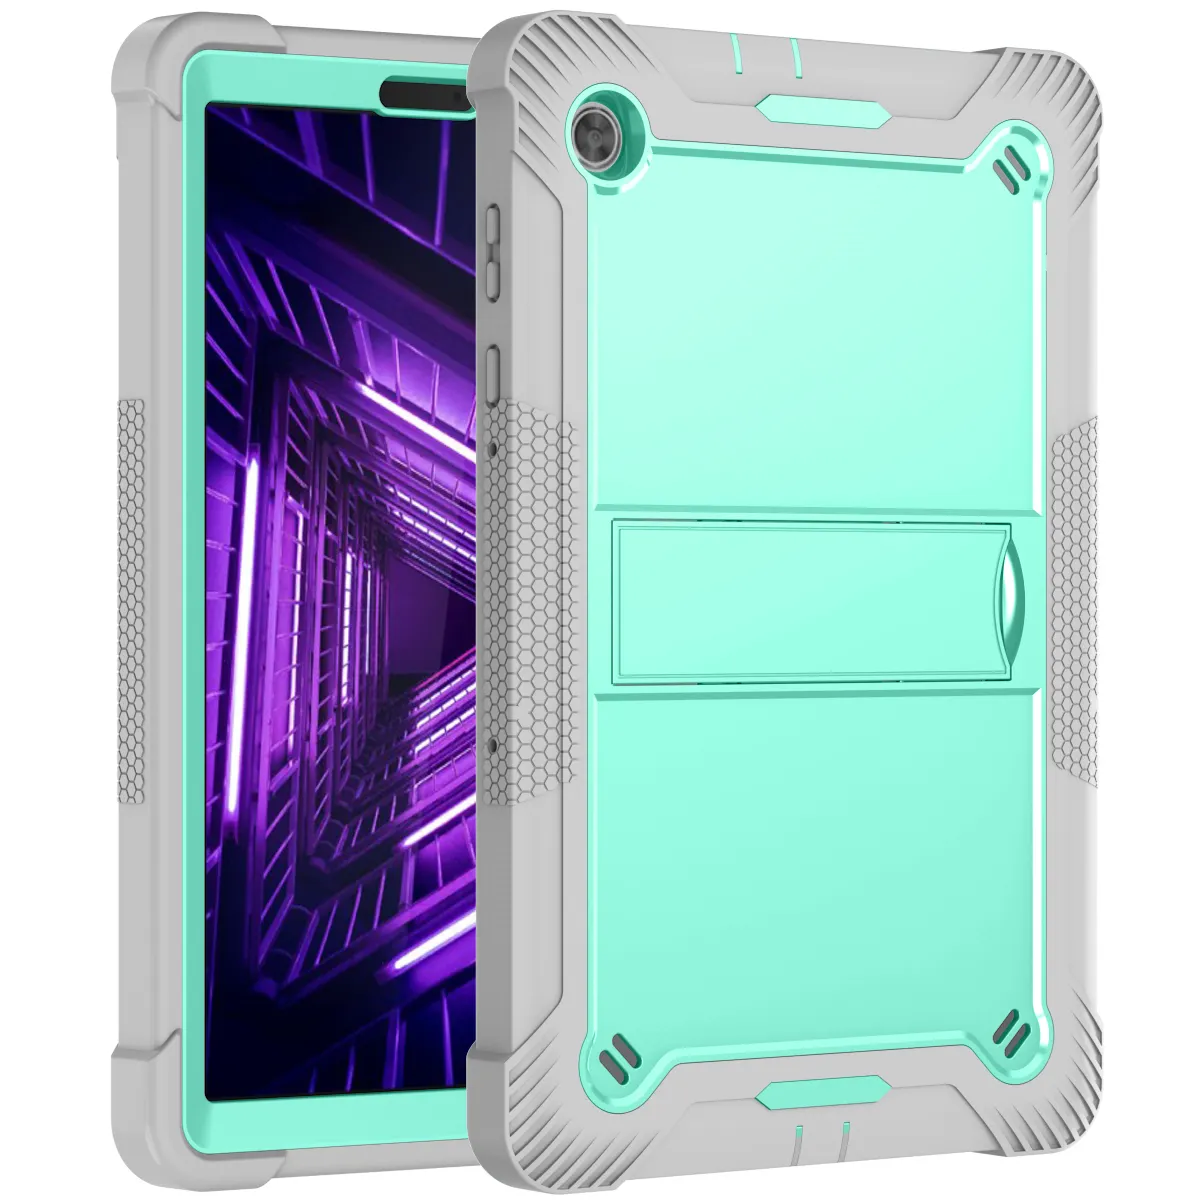 Hete Nieuwe Producten Mint Groen + Grijs Anti-Valwerende Tablet Case Siliconen Beschermhoes Voor Lenovo M10 Plus X606